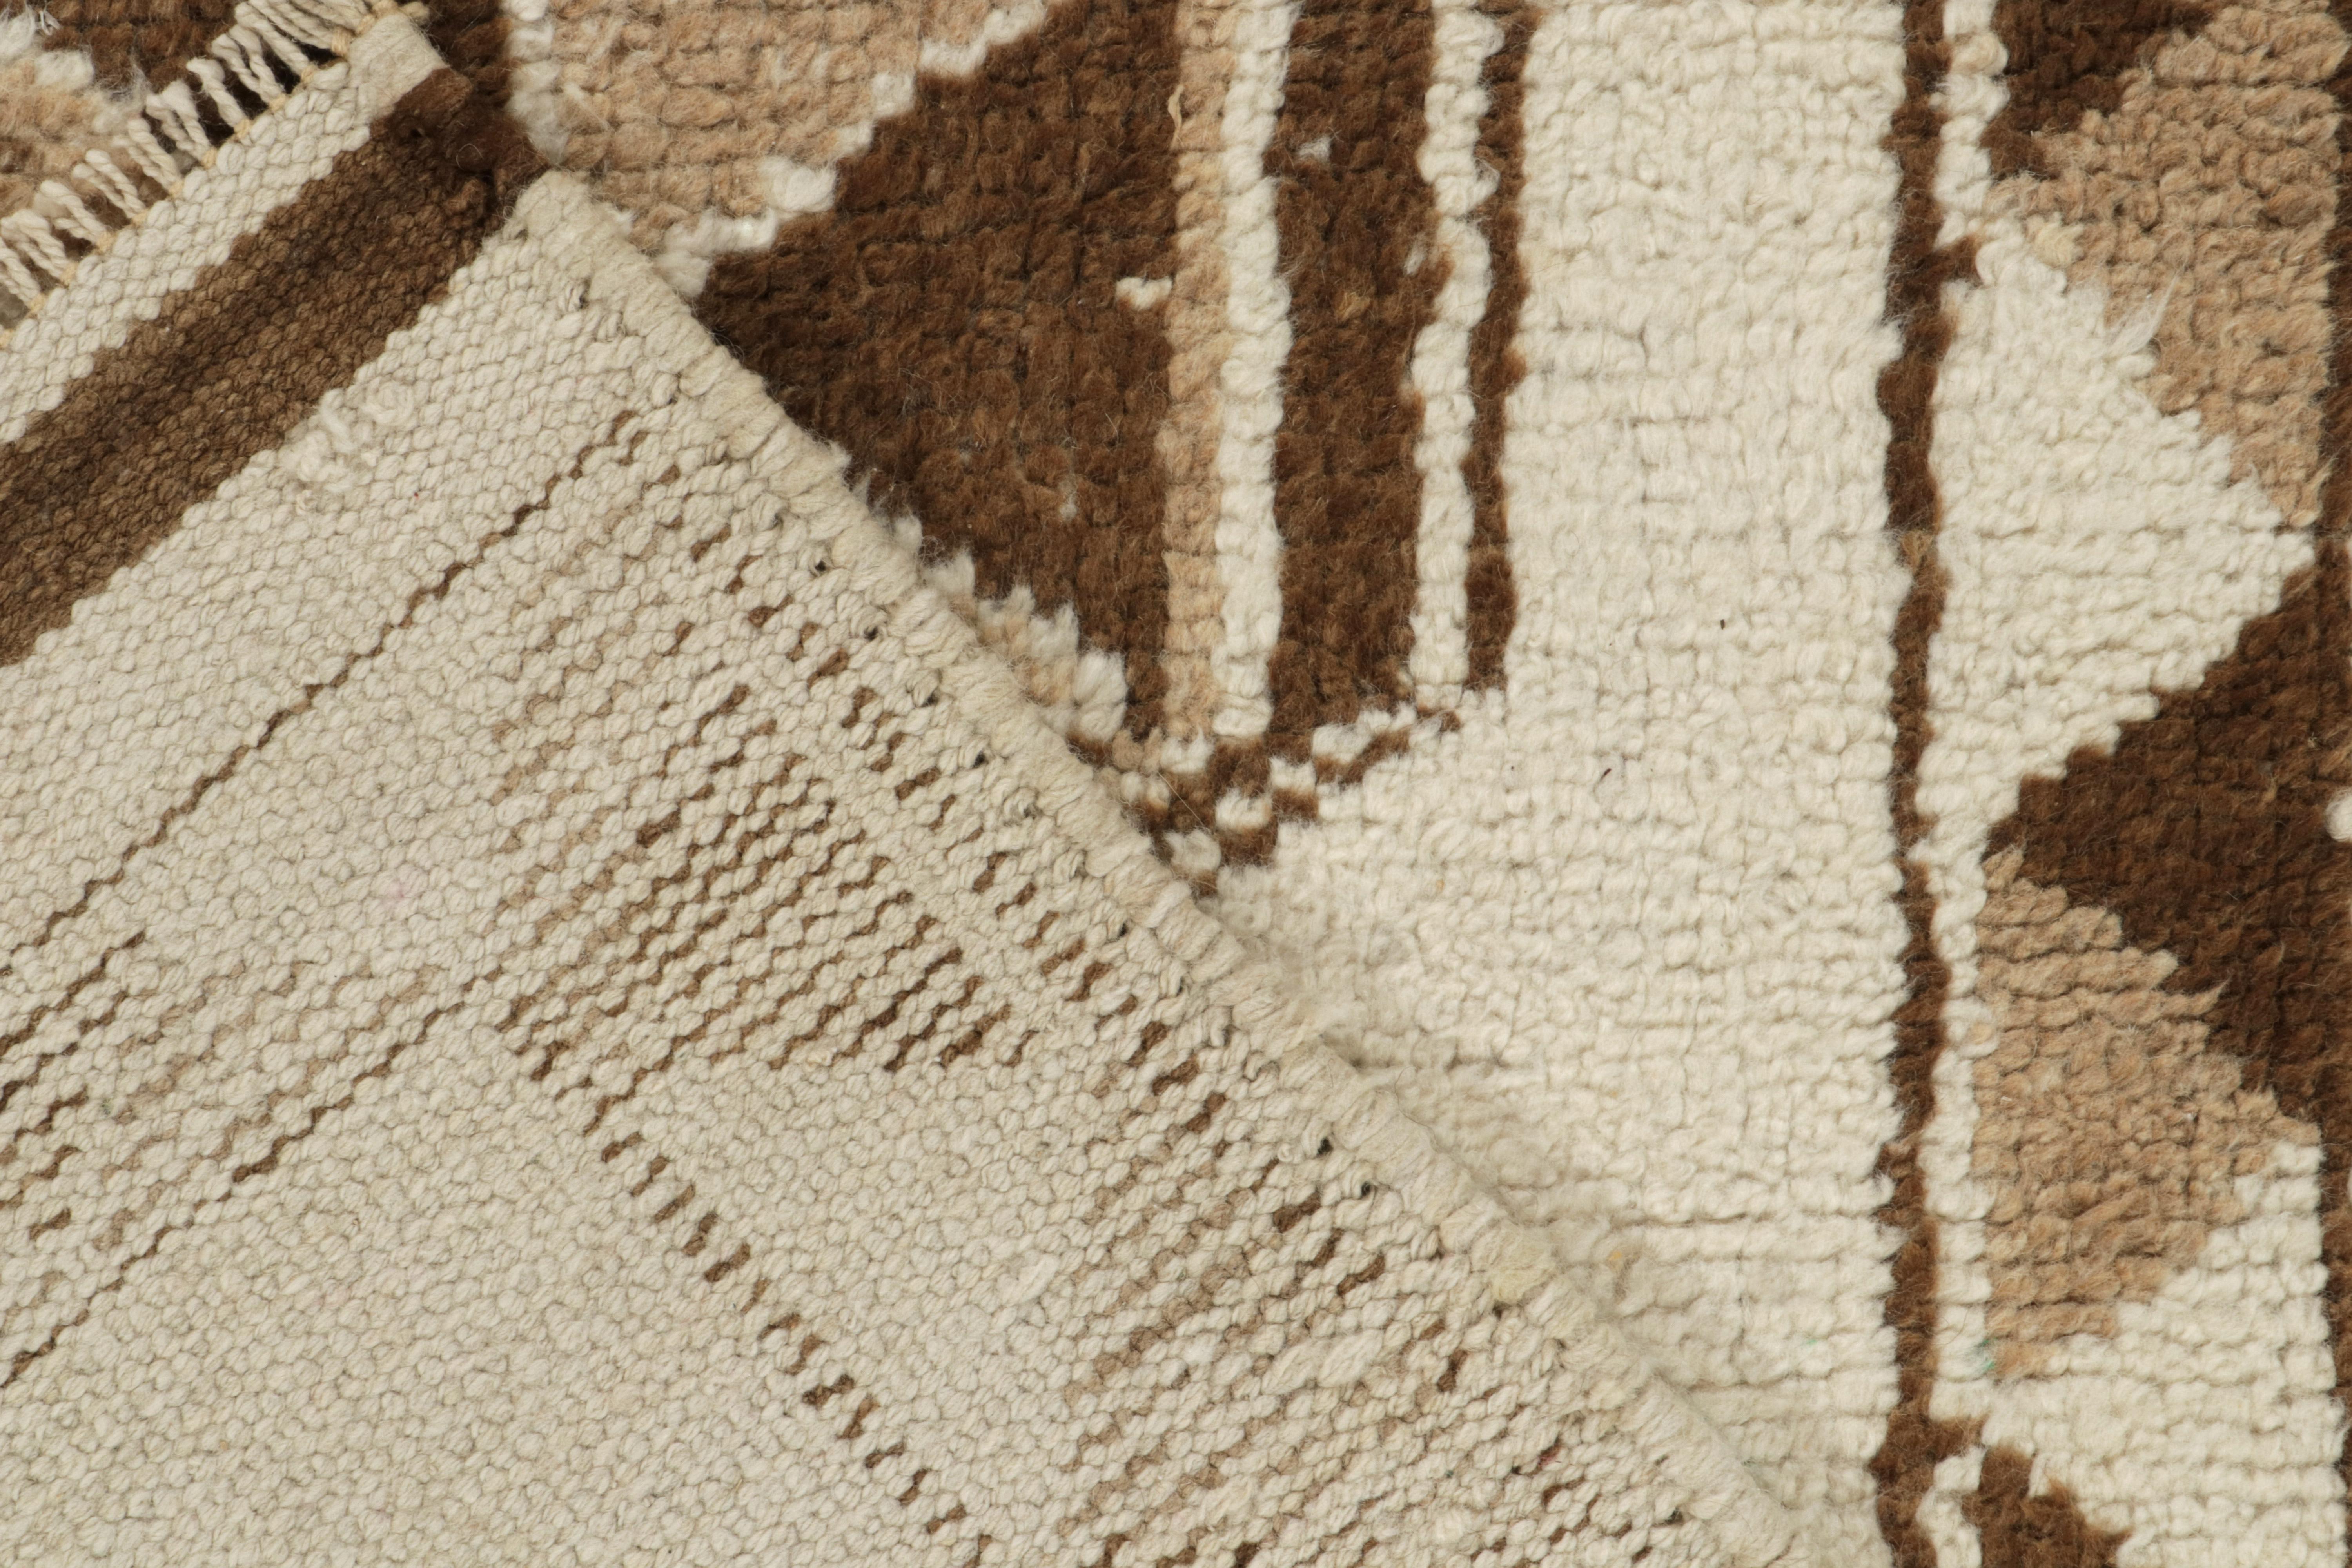 Wool Vintage Tribal Runner in White & Beige-Brown Geometric Pattern, by Rug & Kilim For Sale